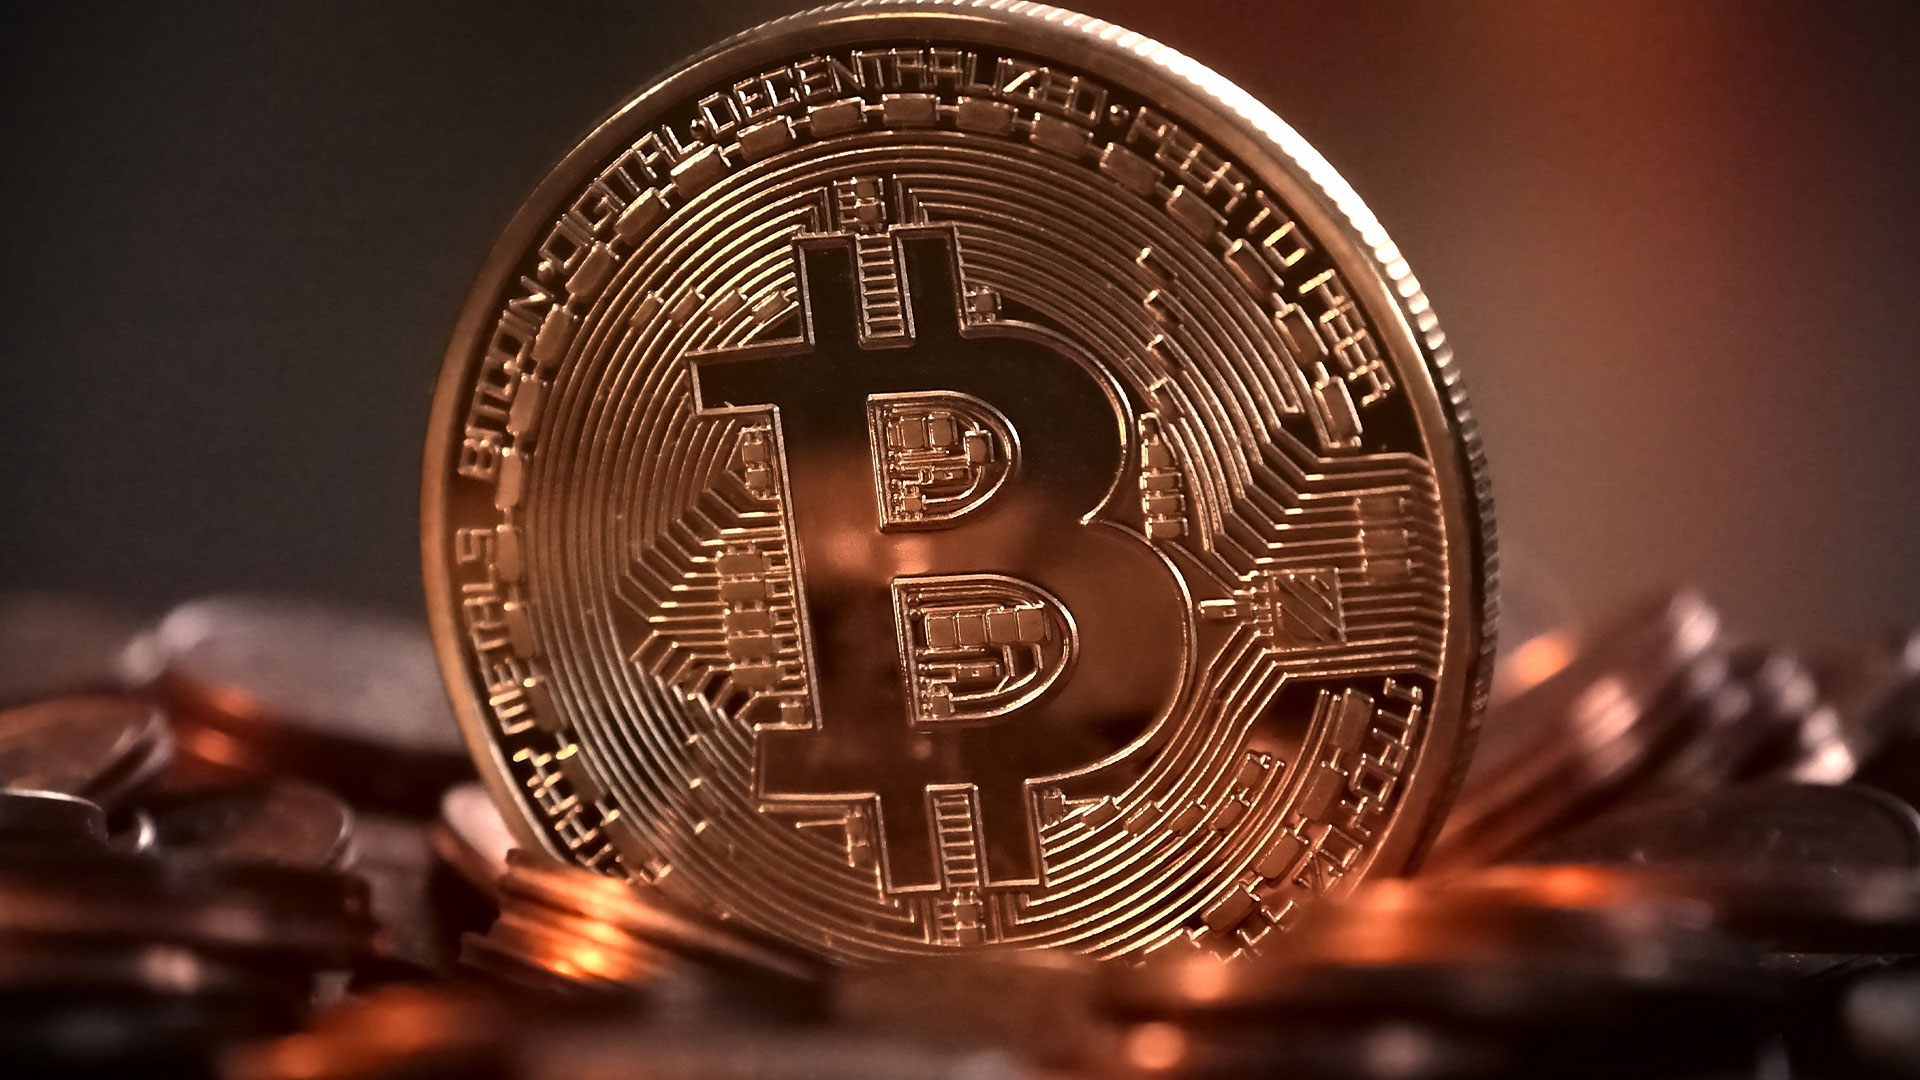 Bugünleri Bitcoin için Alım Fırsatı Olarak Değerlendirebilir miyiz?